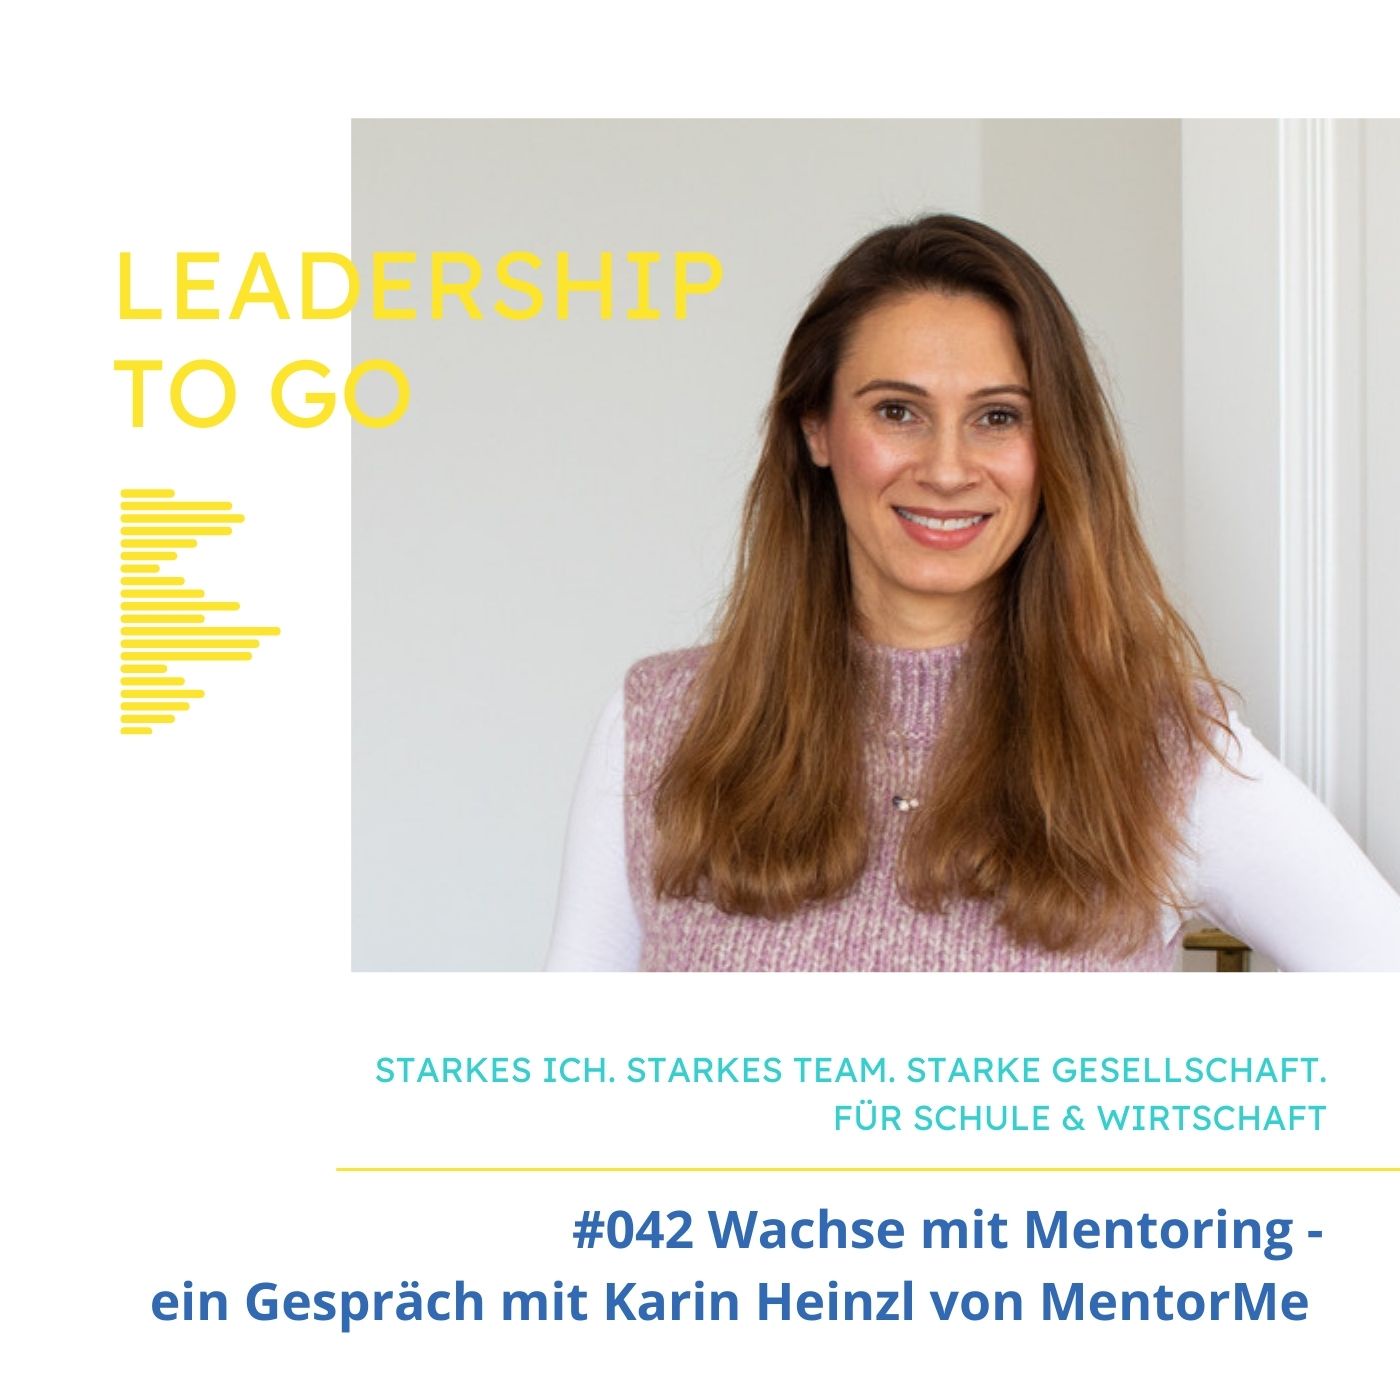 #042 mit Mentoring gemeinsam wachsen - im Gespräch mit Karin Heinzl von MentorMe